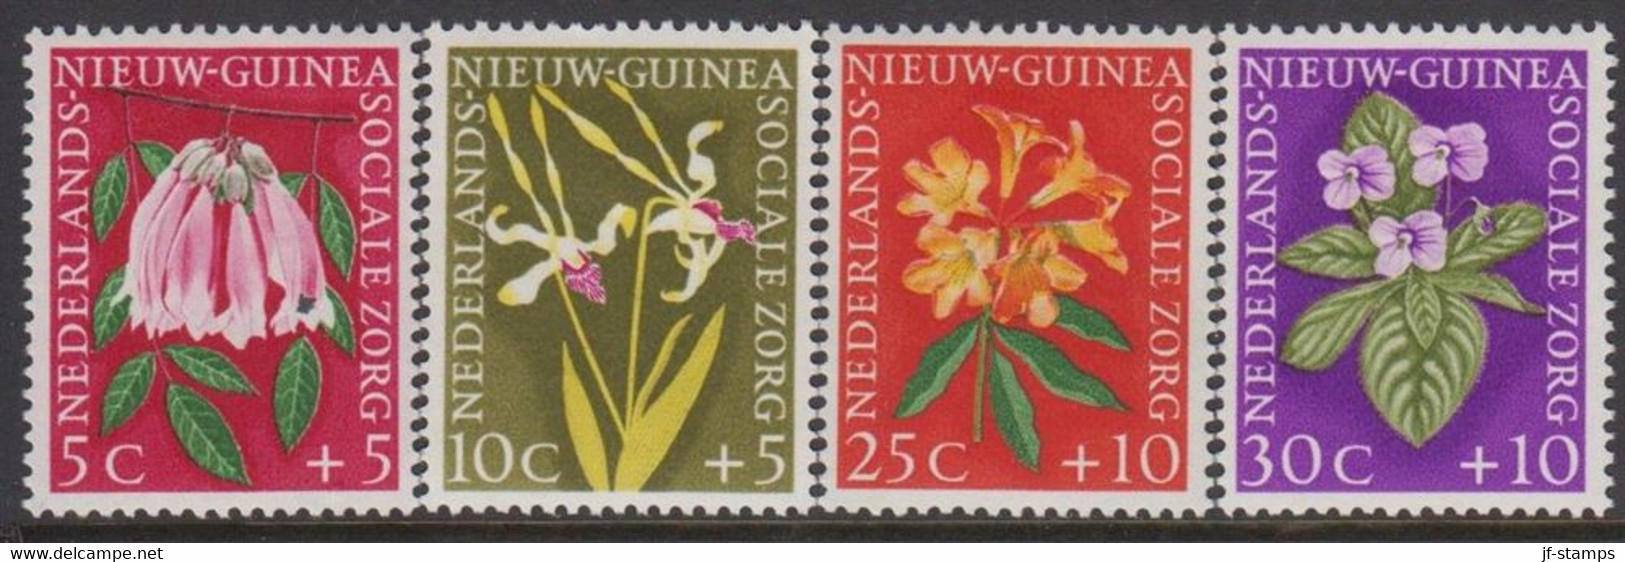 1959. NIEUW GUINEA. Flowers Complete Set Hinged.  - JF529305 - Nederlands Nieuw-Guinea